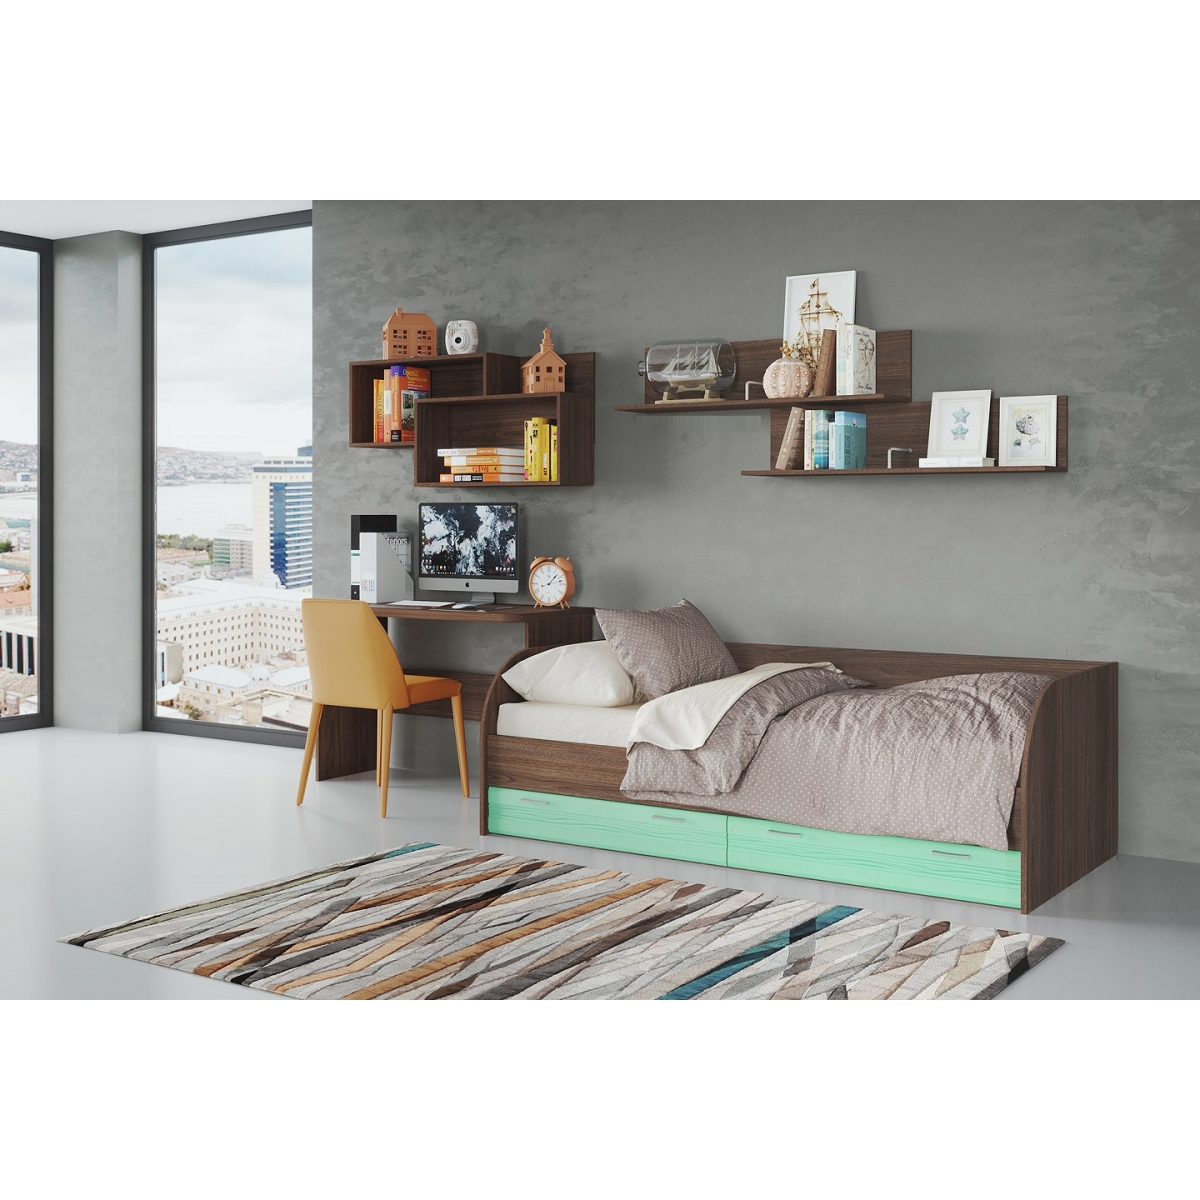 Кровать подростковая Лотос КР-804, цвет рэд фокс + зеленый